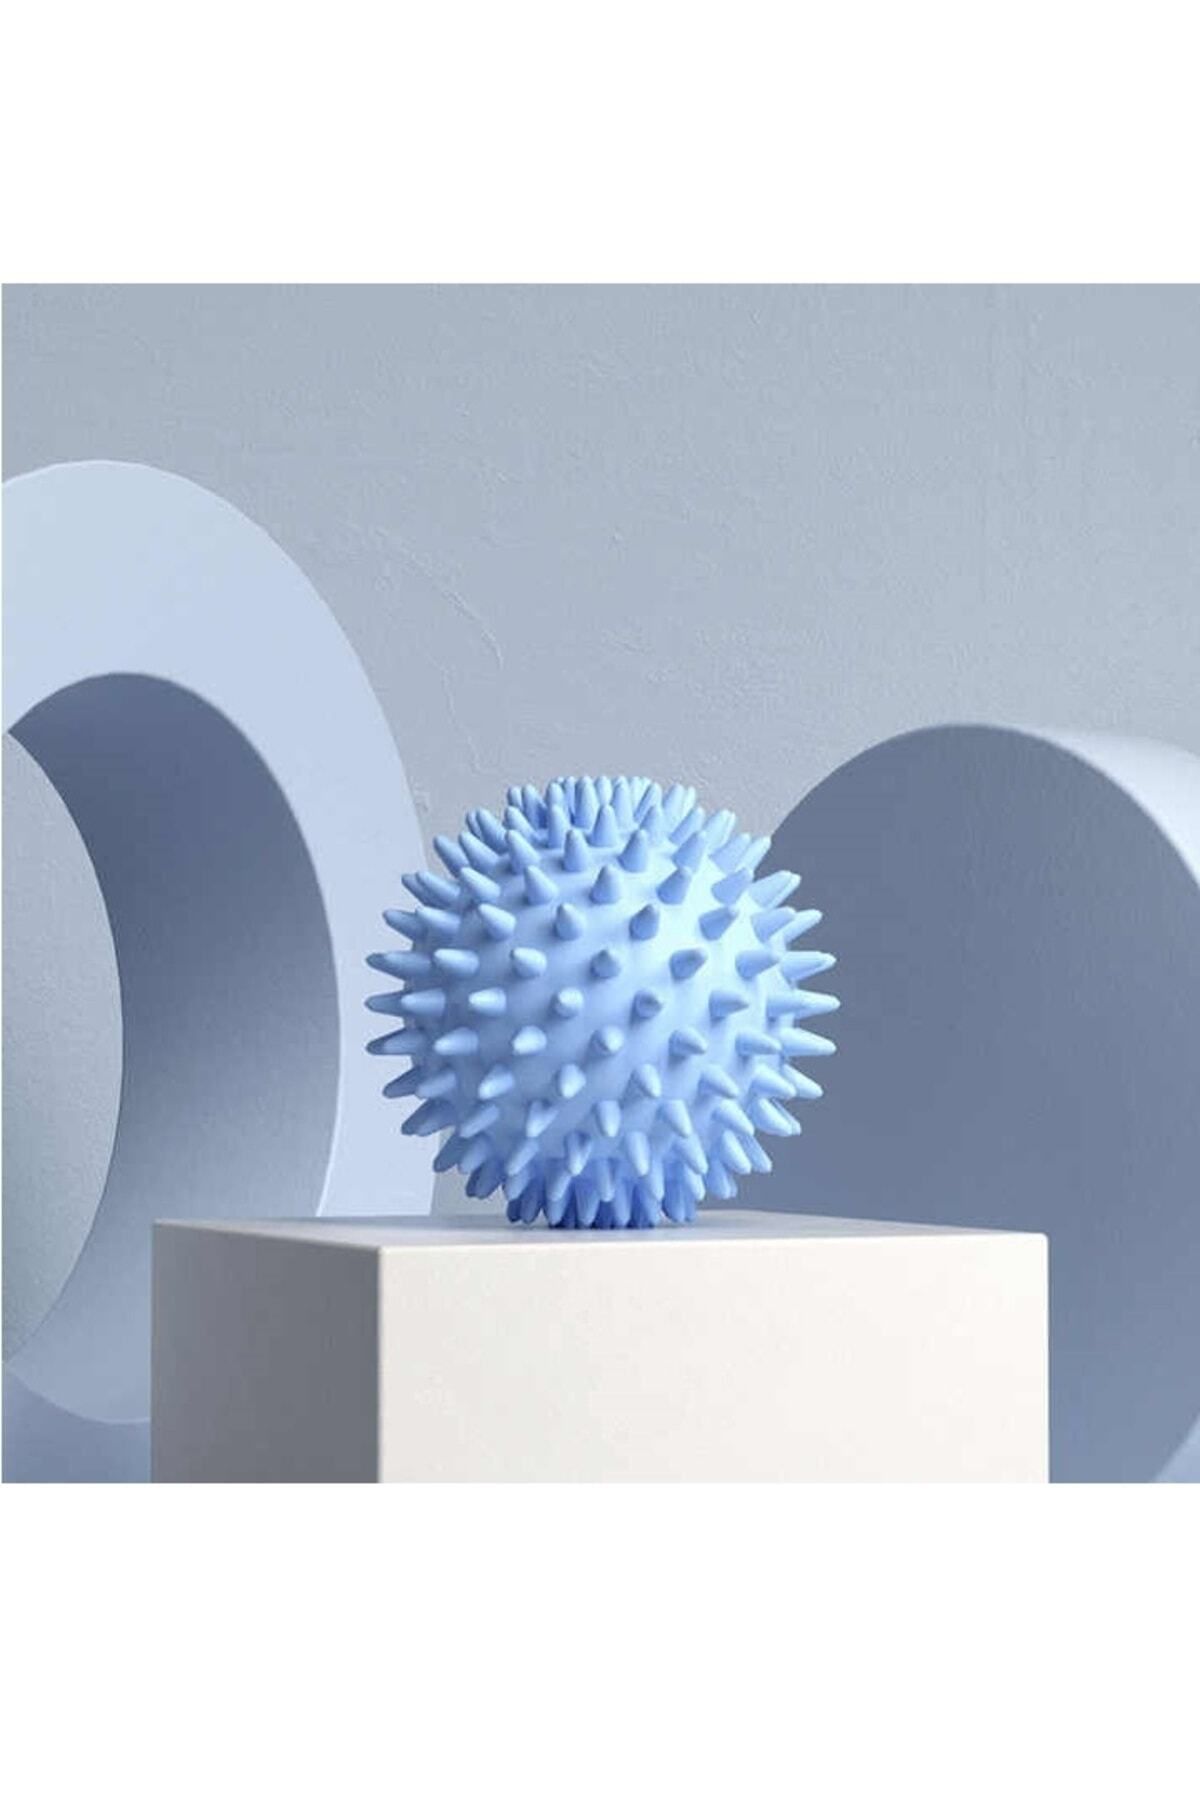 teknotrust Mavi Kas Gevşetici Masaj Topu - Dikenli Duyu Uyarıcı El Ayak Sırt Vücut Egzersiz Topu Massage Ball